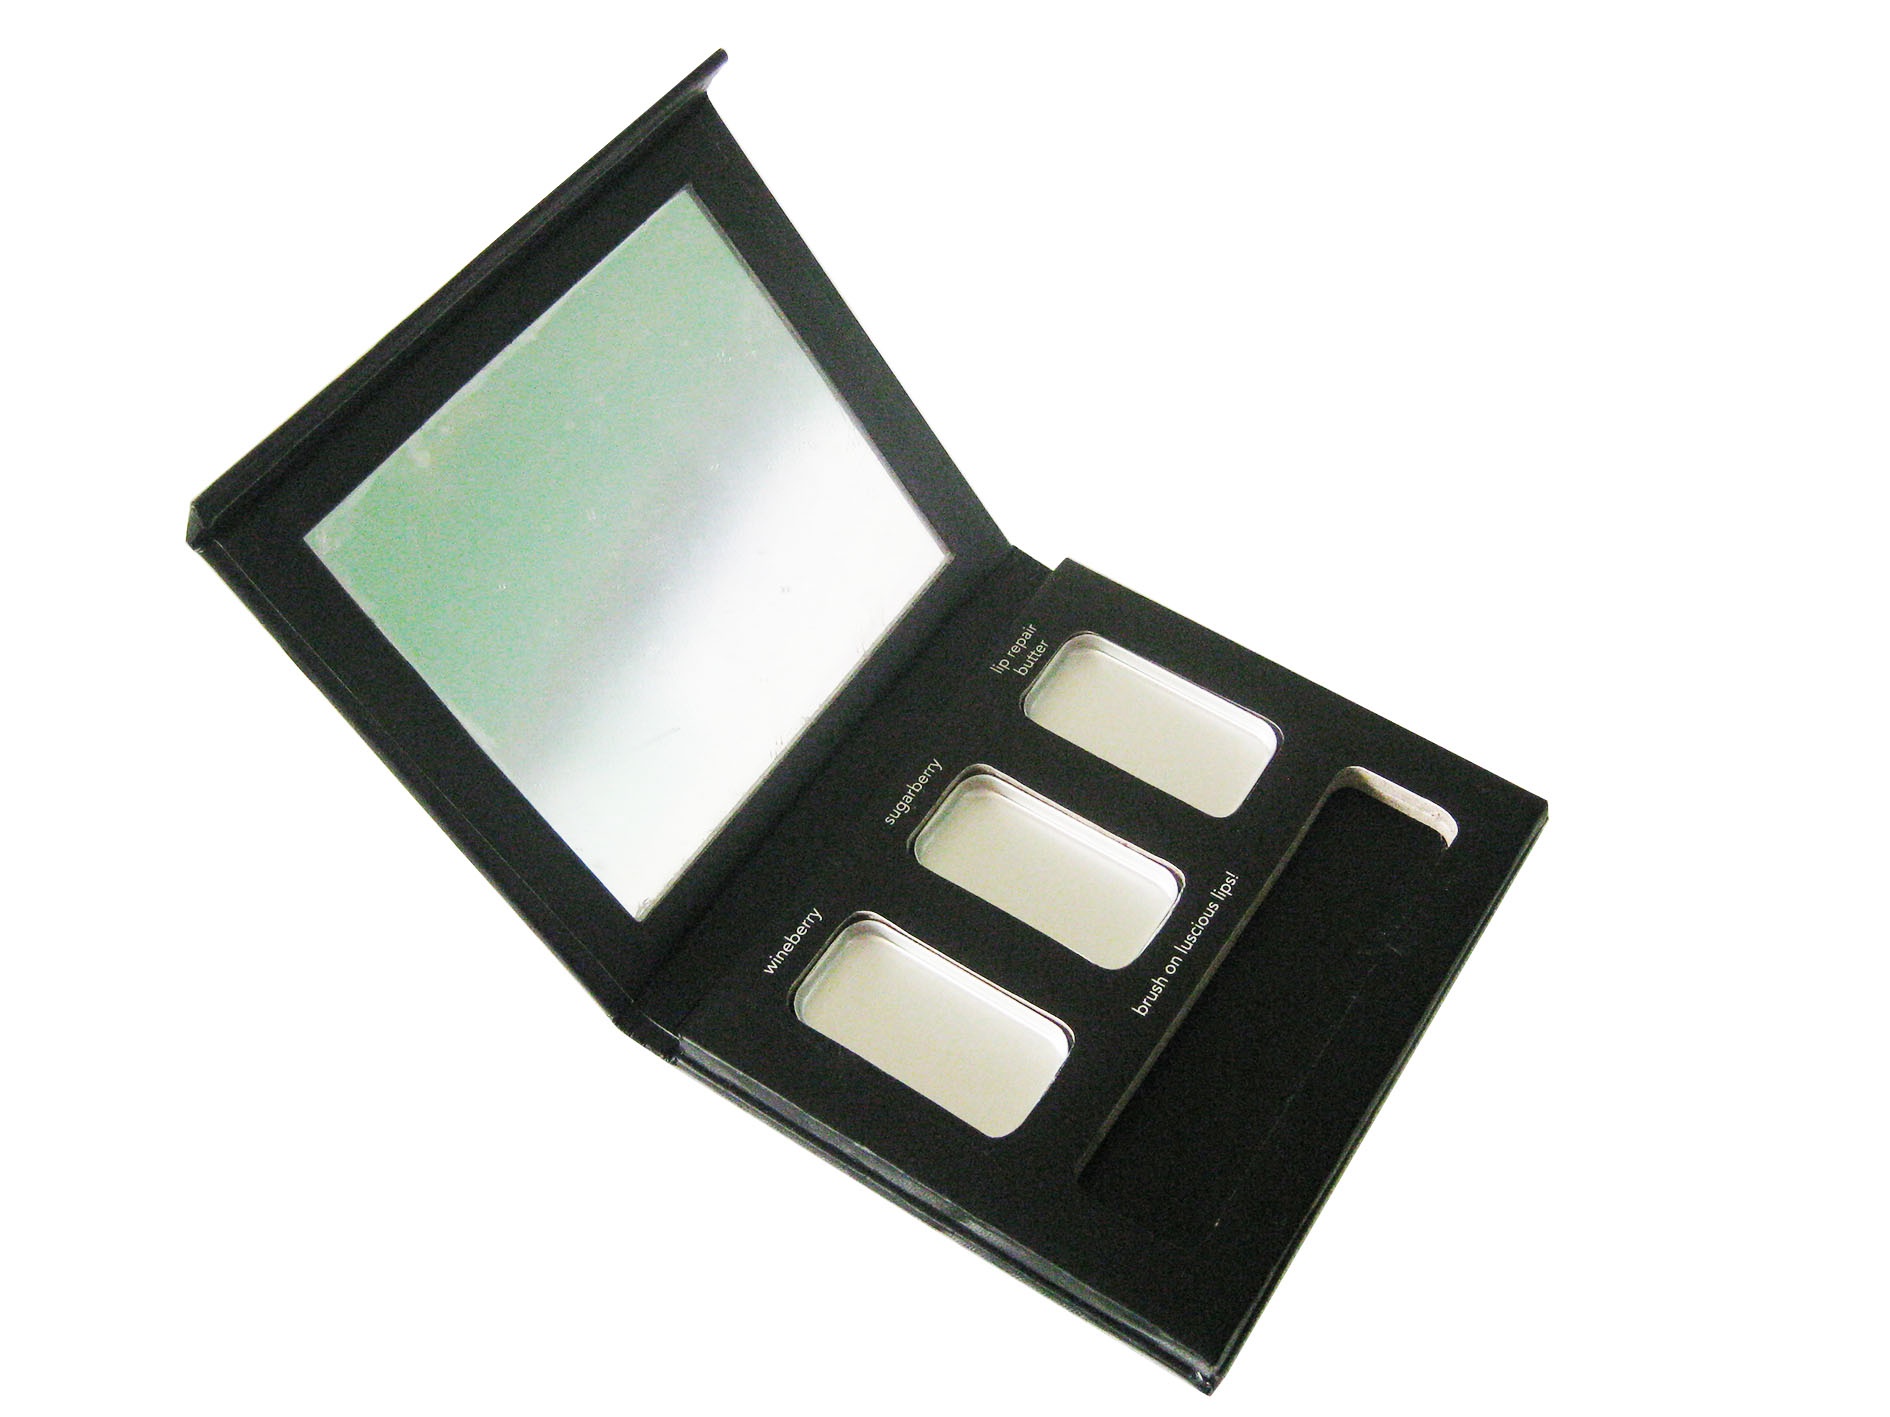 Makeup Paper Palette Boxes